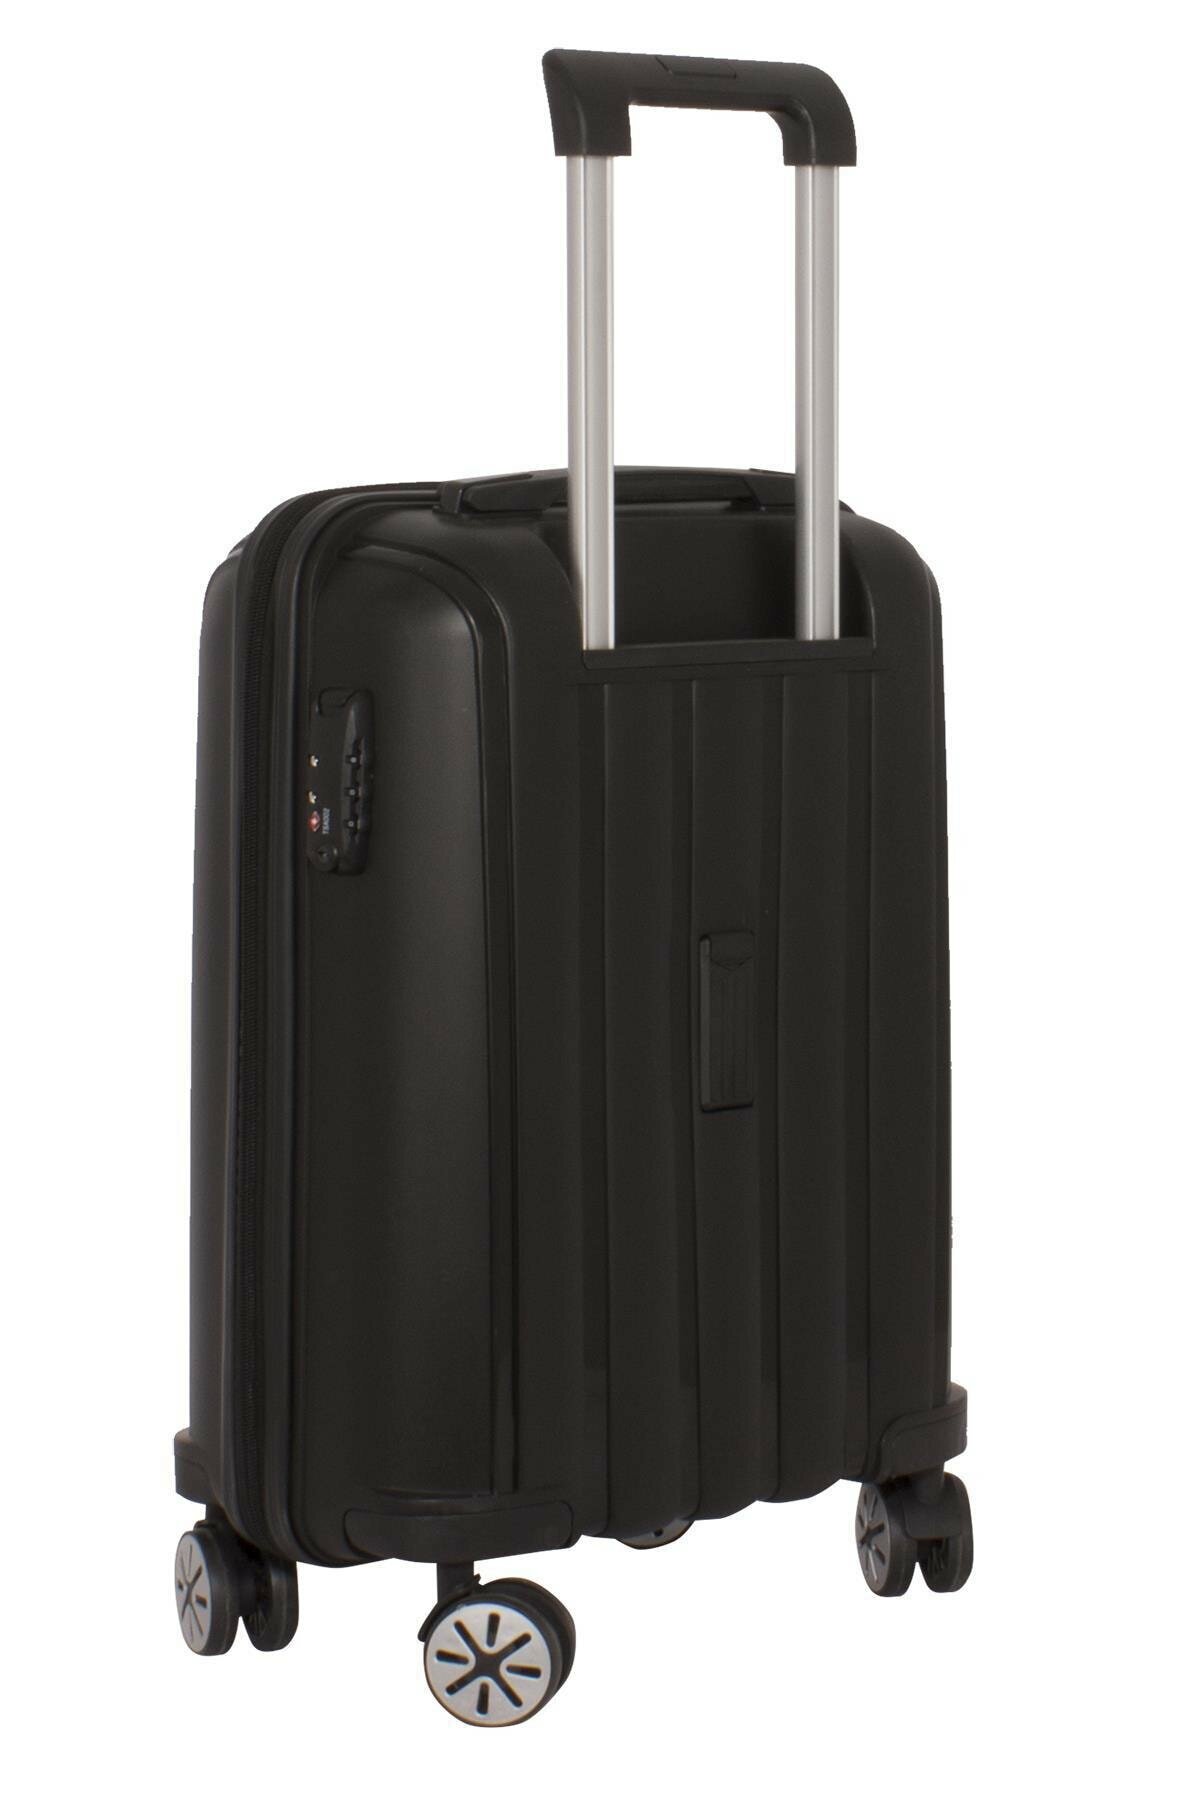 Маленький чемодан для ручьной клади из полипропилена MCS V305 S BLACK! Для 8-10 кг! - 4